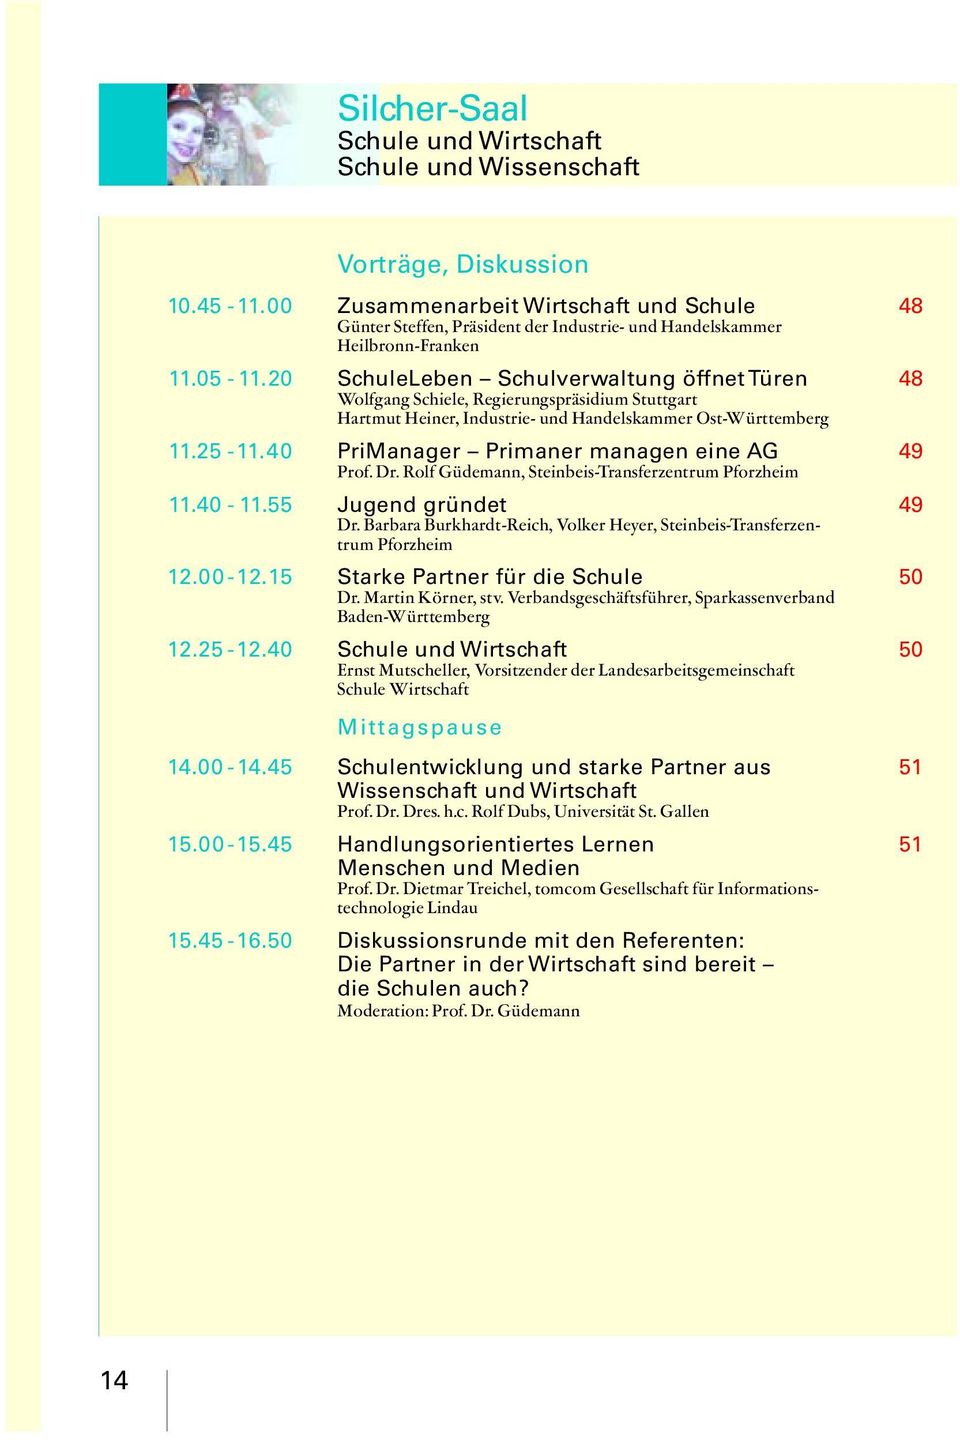 20 SchuleLeben Schulverwaltung öffnet Türen Wolfgang Schiele, Regierungspräsidium Stuttgart Hartmut Heiner, Industrie- und Handelskammer Ost-Württemberg 11.25-11.